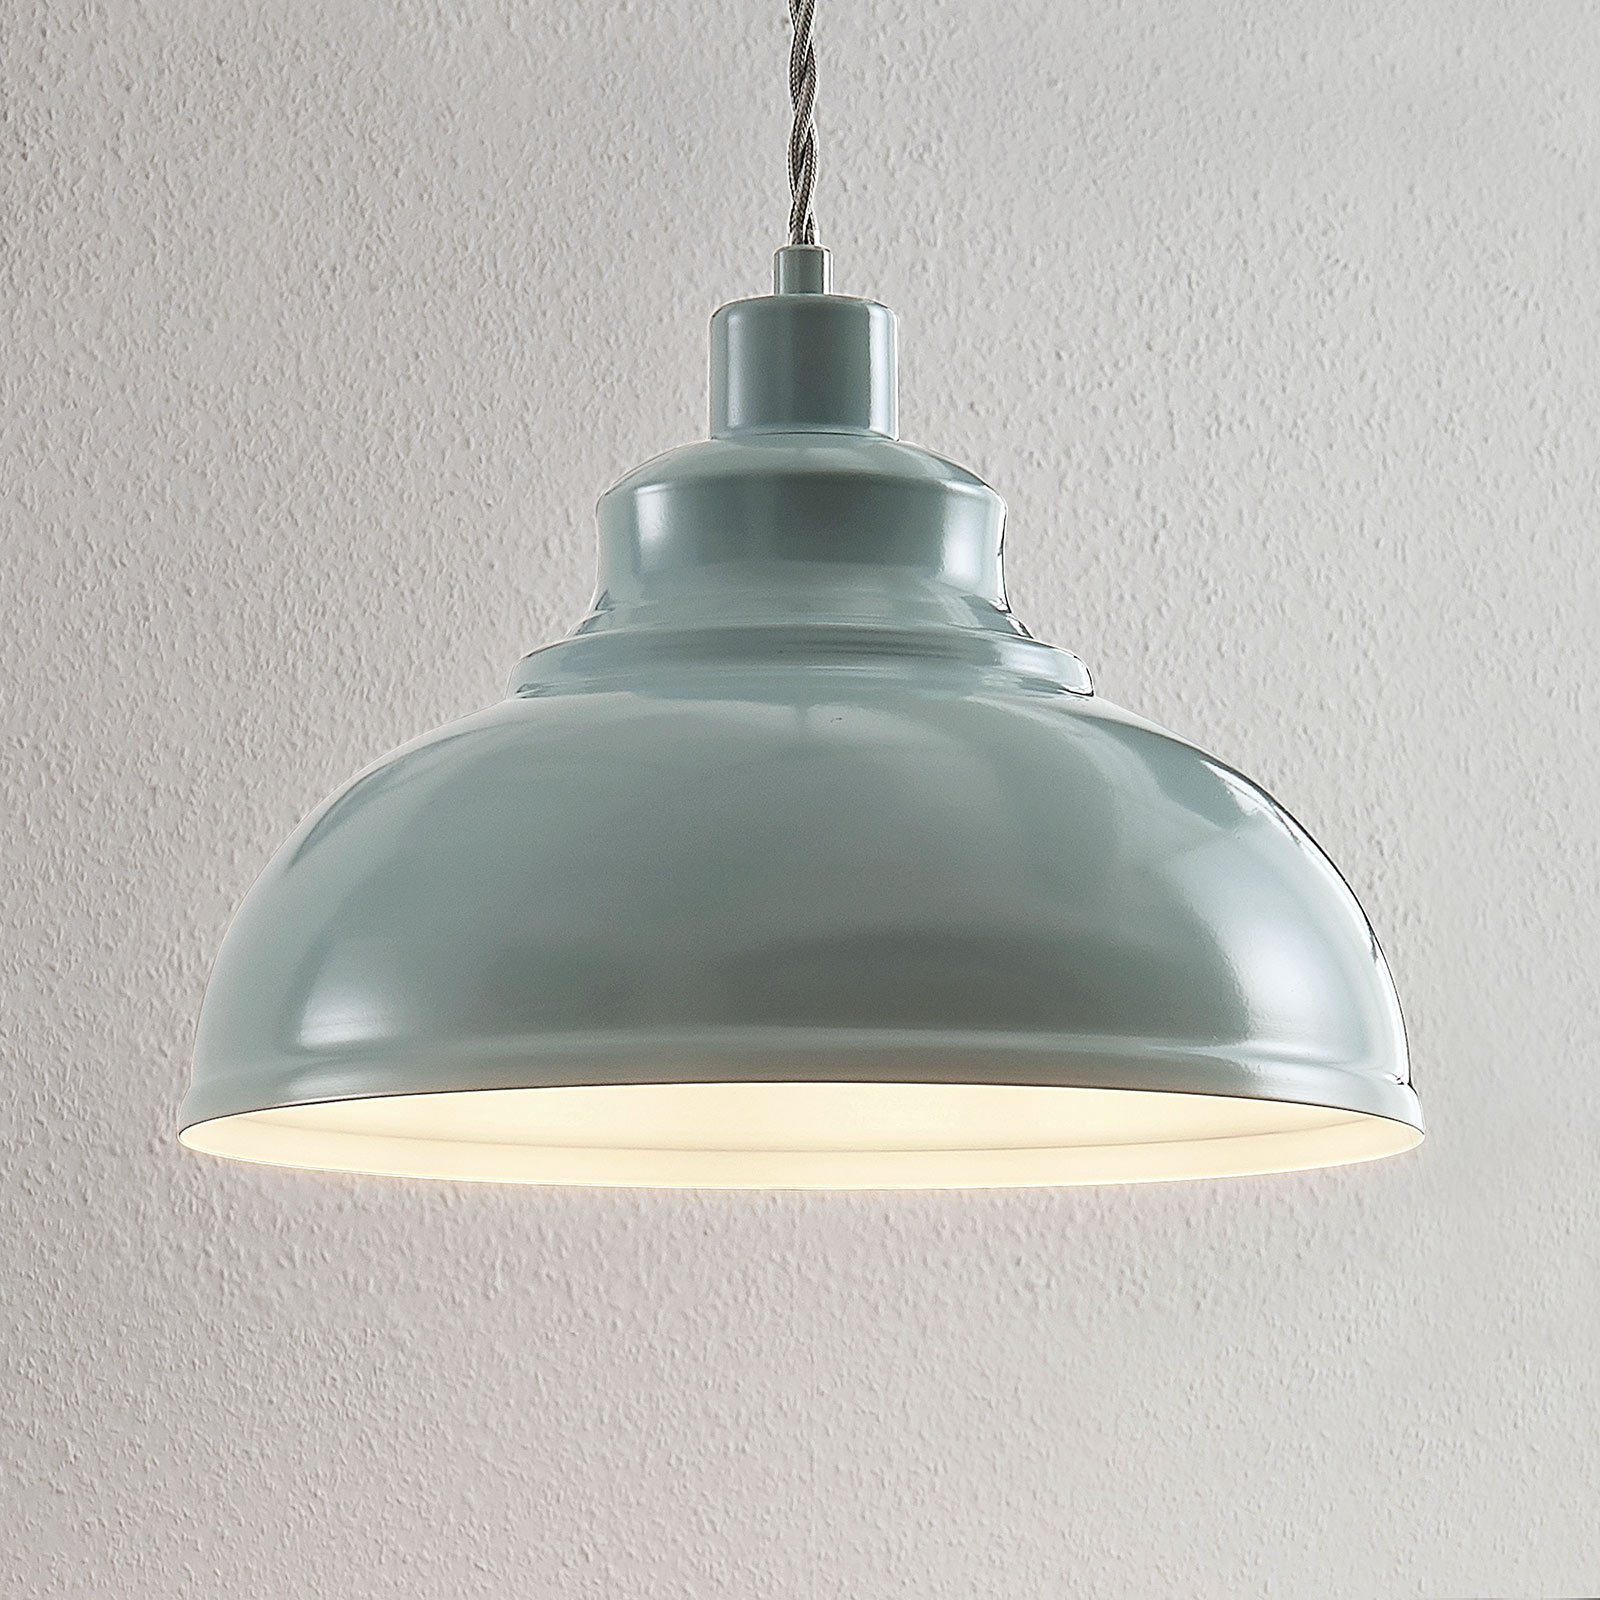 Albertine vintage függő lámpa, fém, világoskék